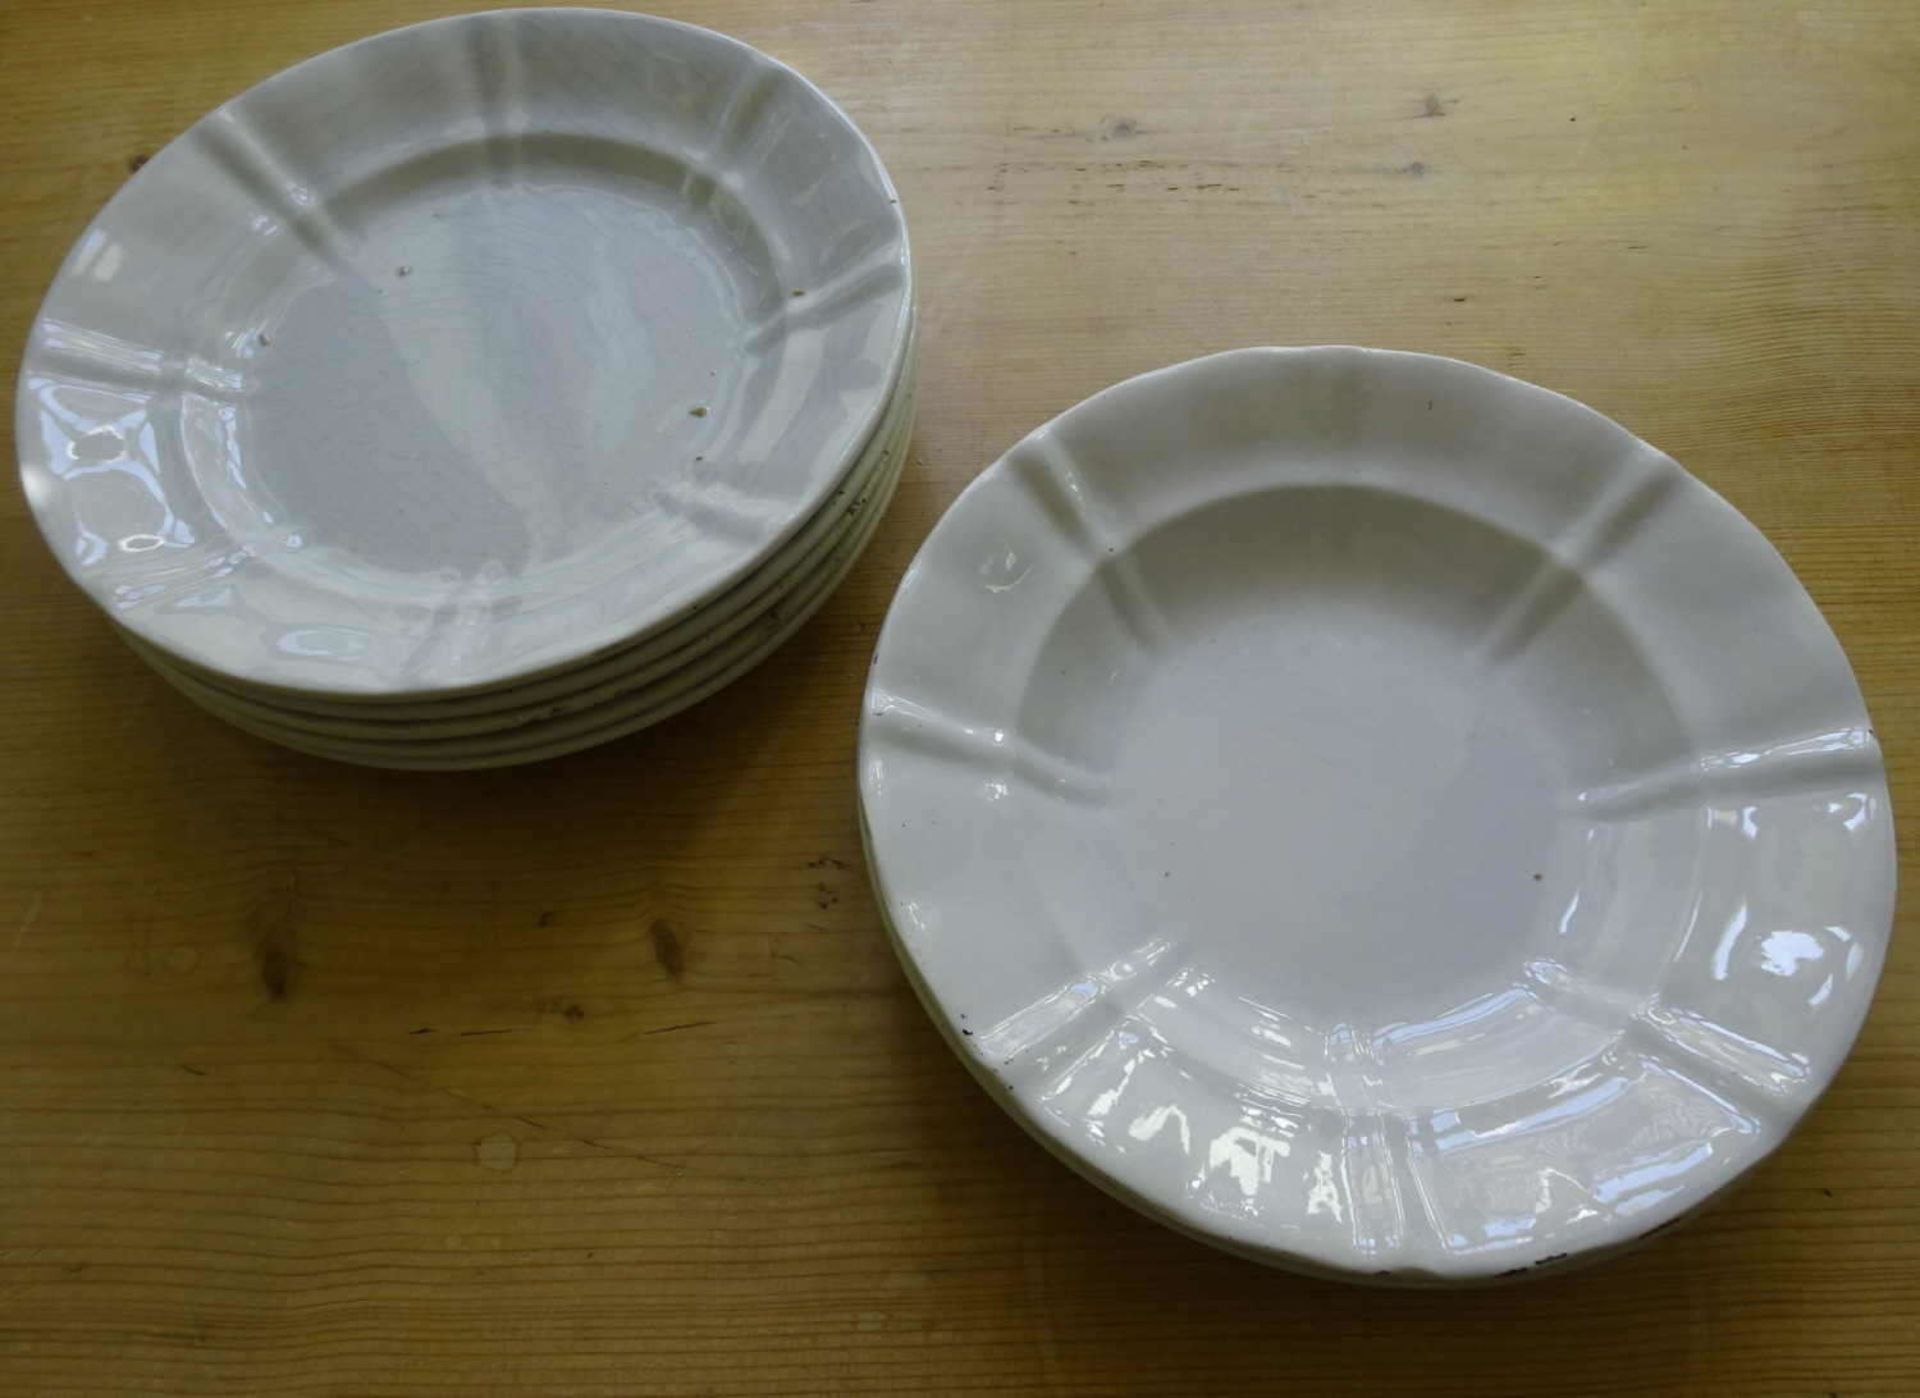 7 Teller Grünstadter Keramik "Gebrüder Bordollo" weiße Glasur. 5 flach und 2 tiefe Teller. Recht